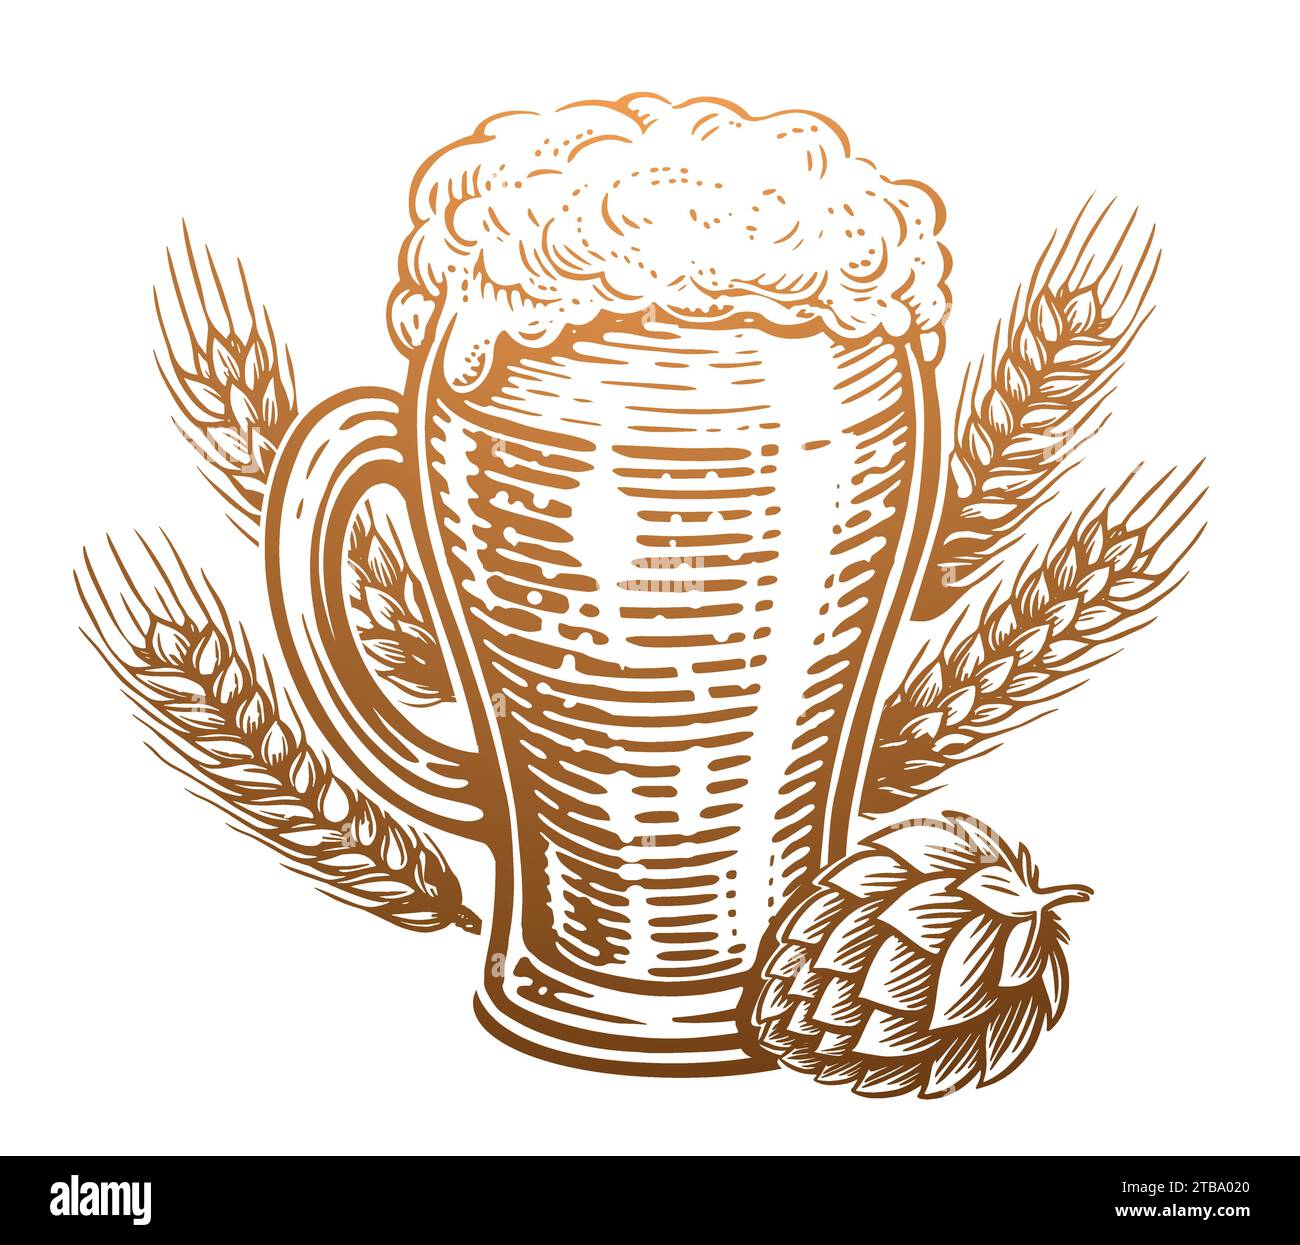 Bicchiere da birra con schiuma traboccante, luppolo e frumento. Pub, disegnare illustrazioni vettoriali vintage Illustrazione Vettoriale